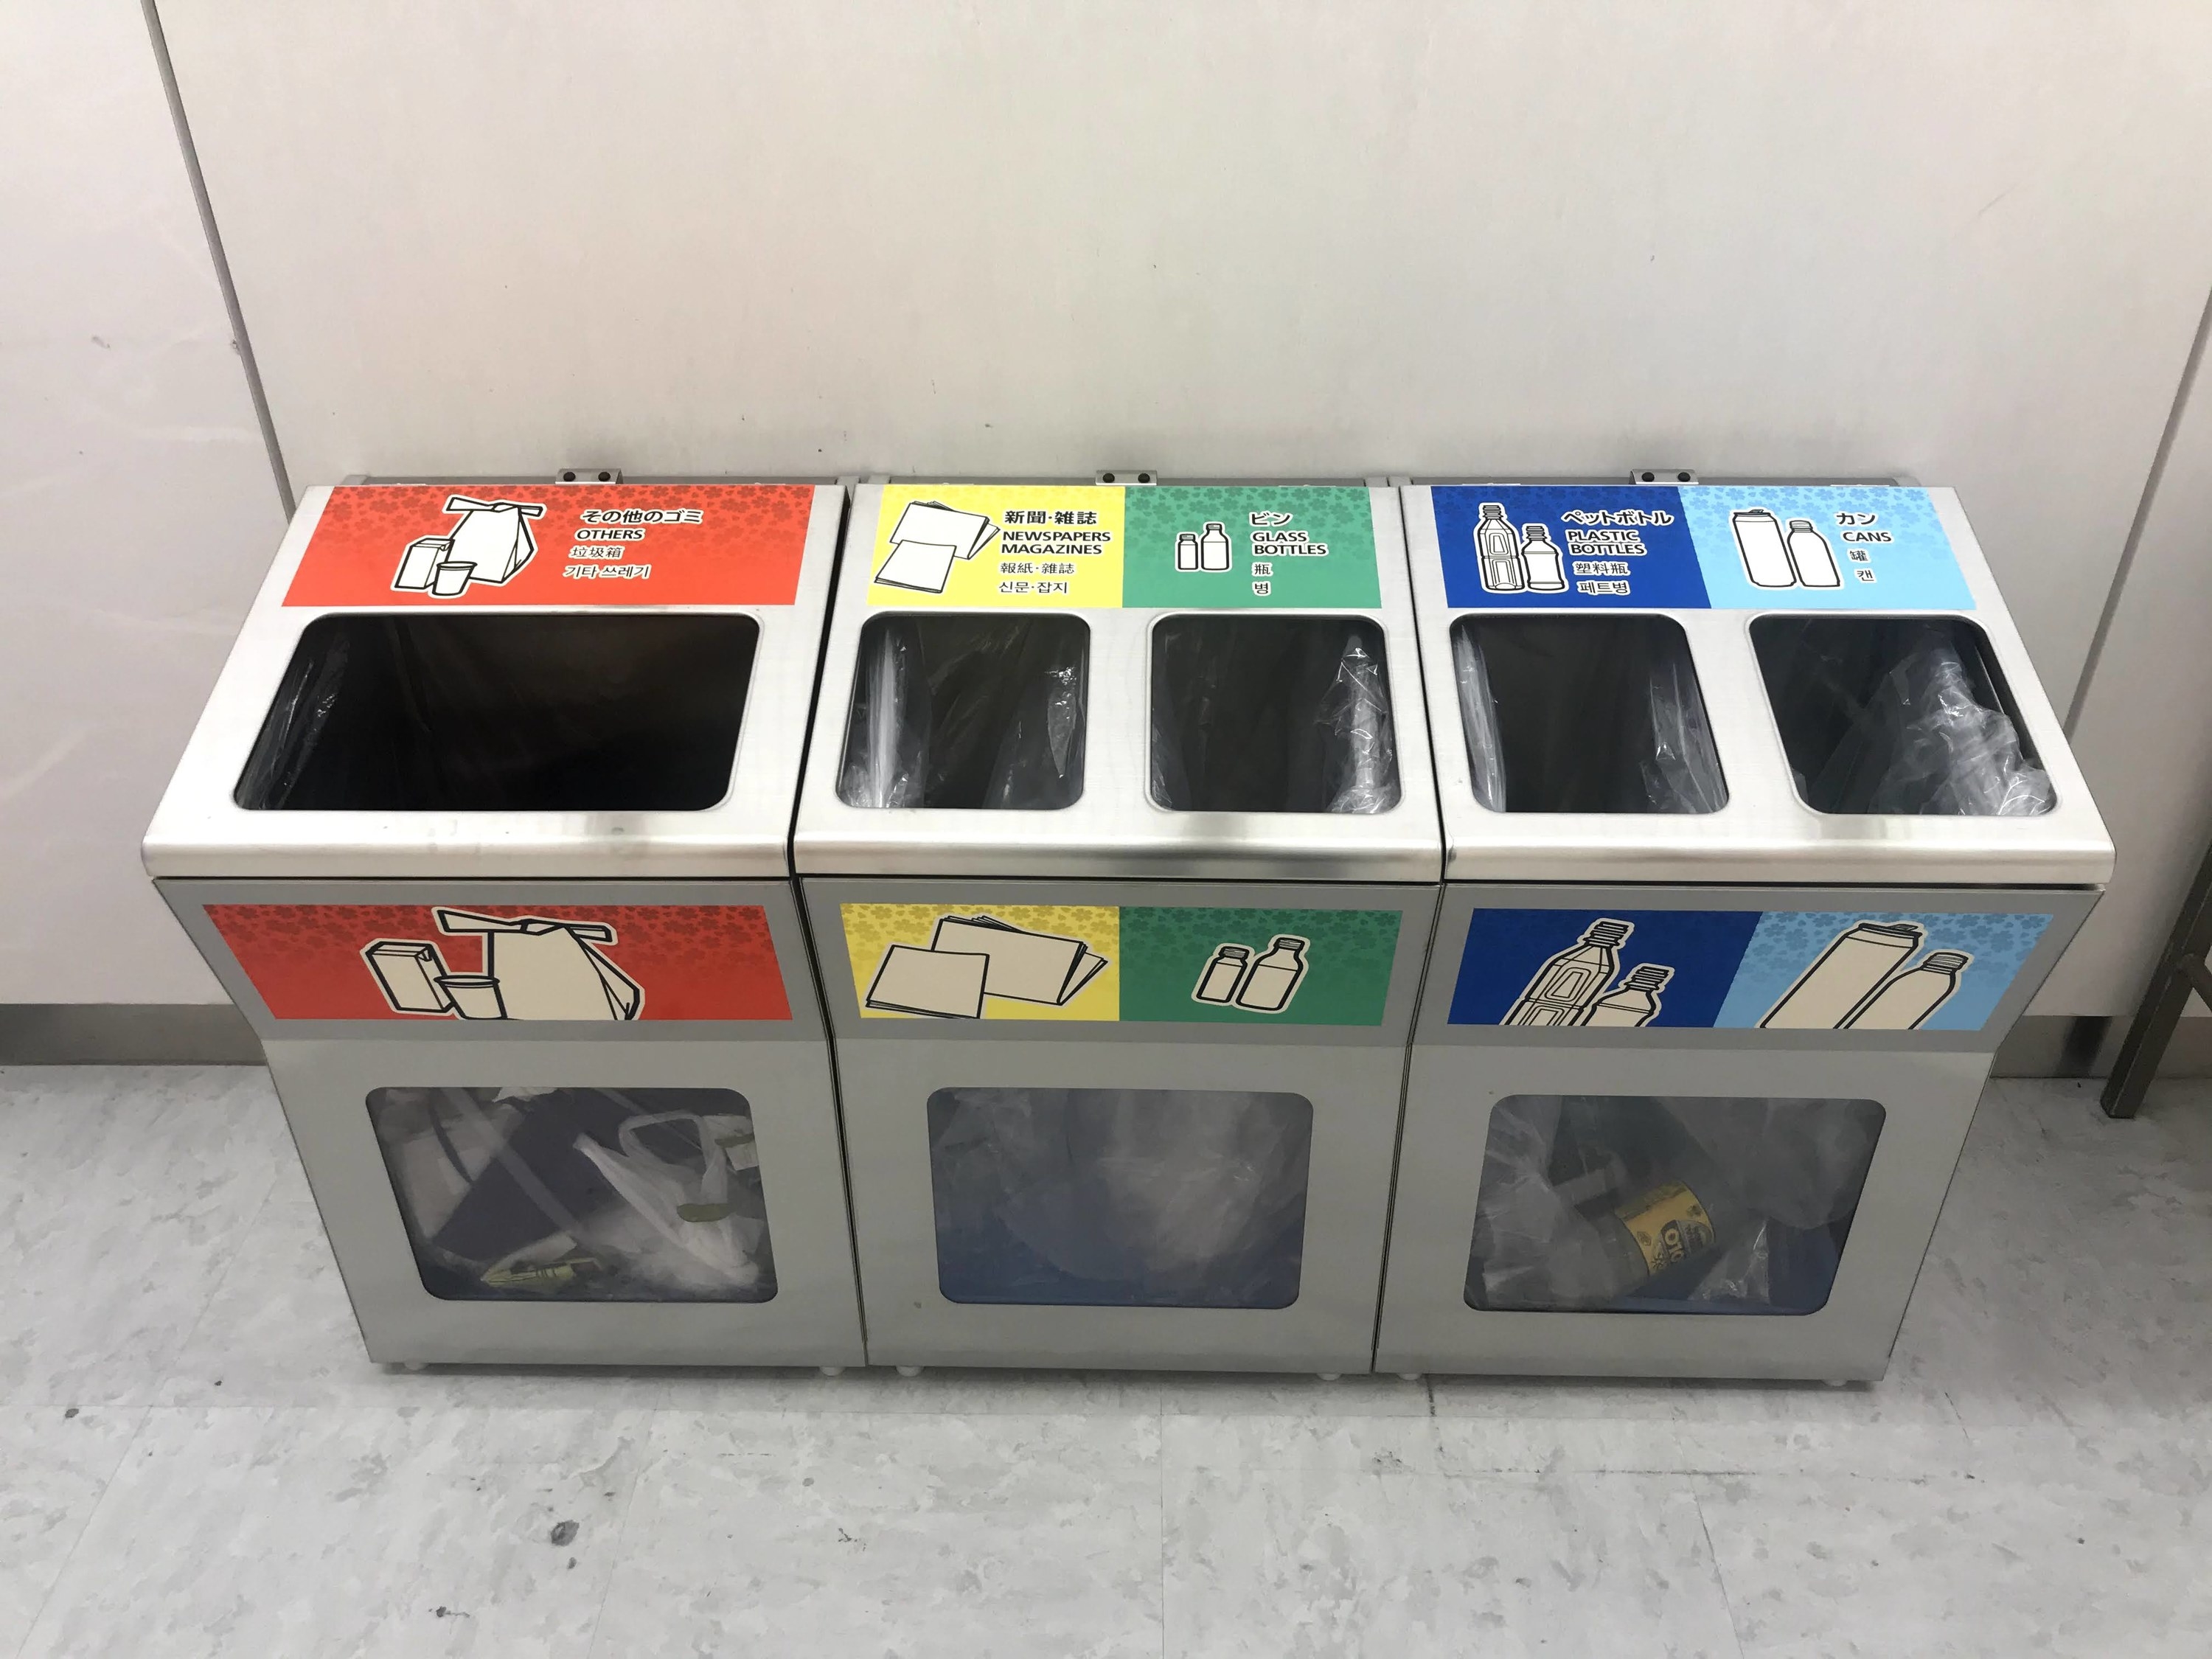 Recycling bin in Tokyo